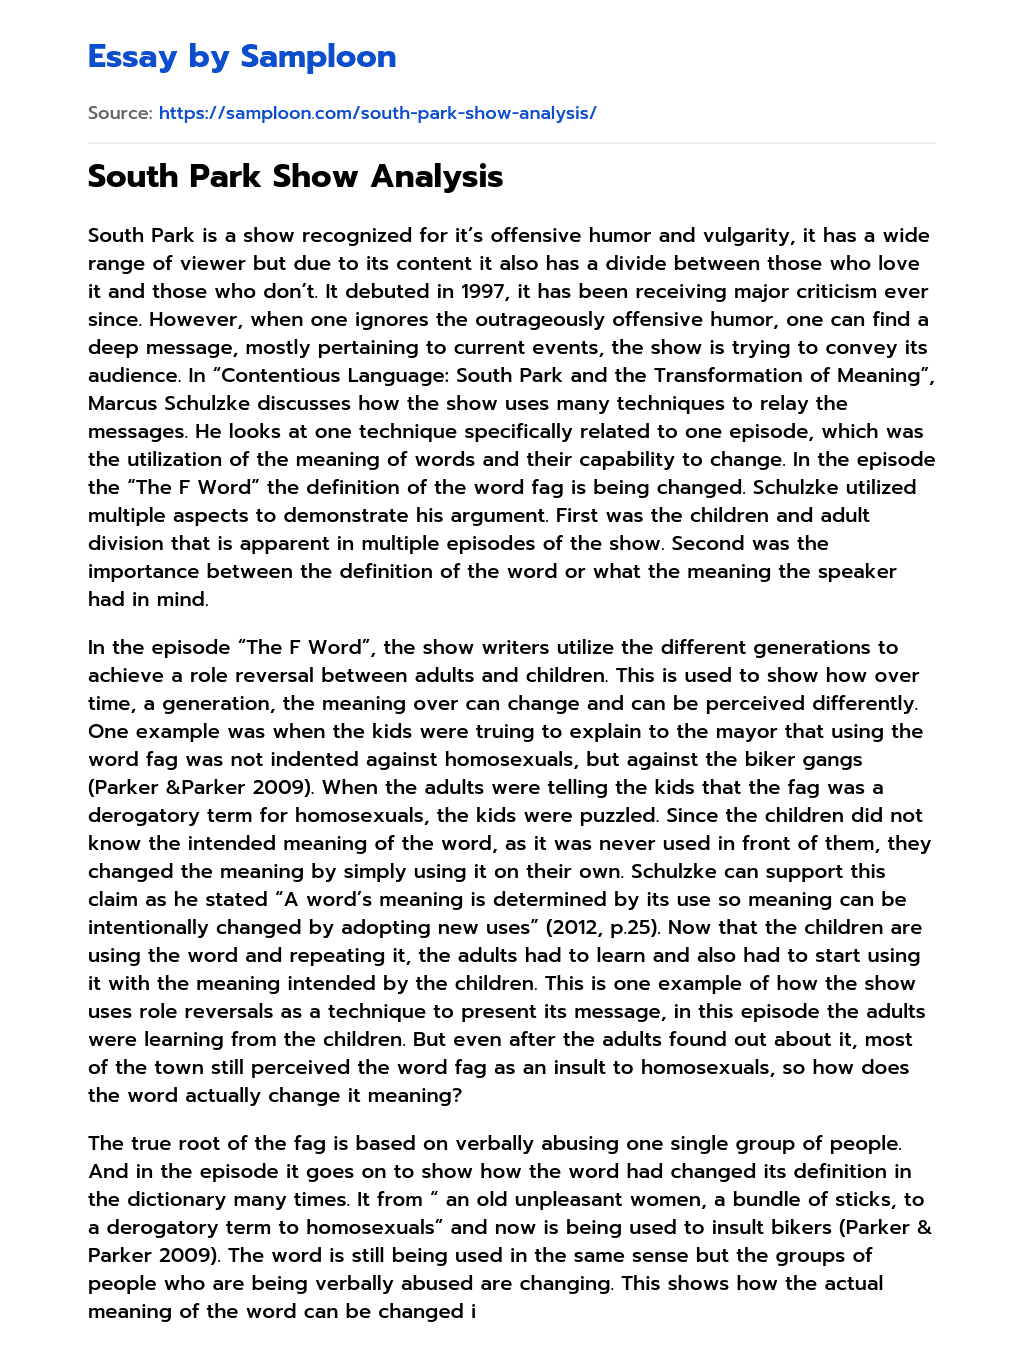 South Park Show Analysis essay